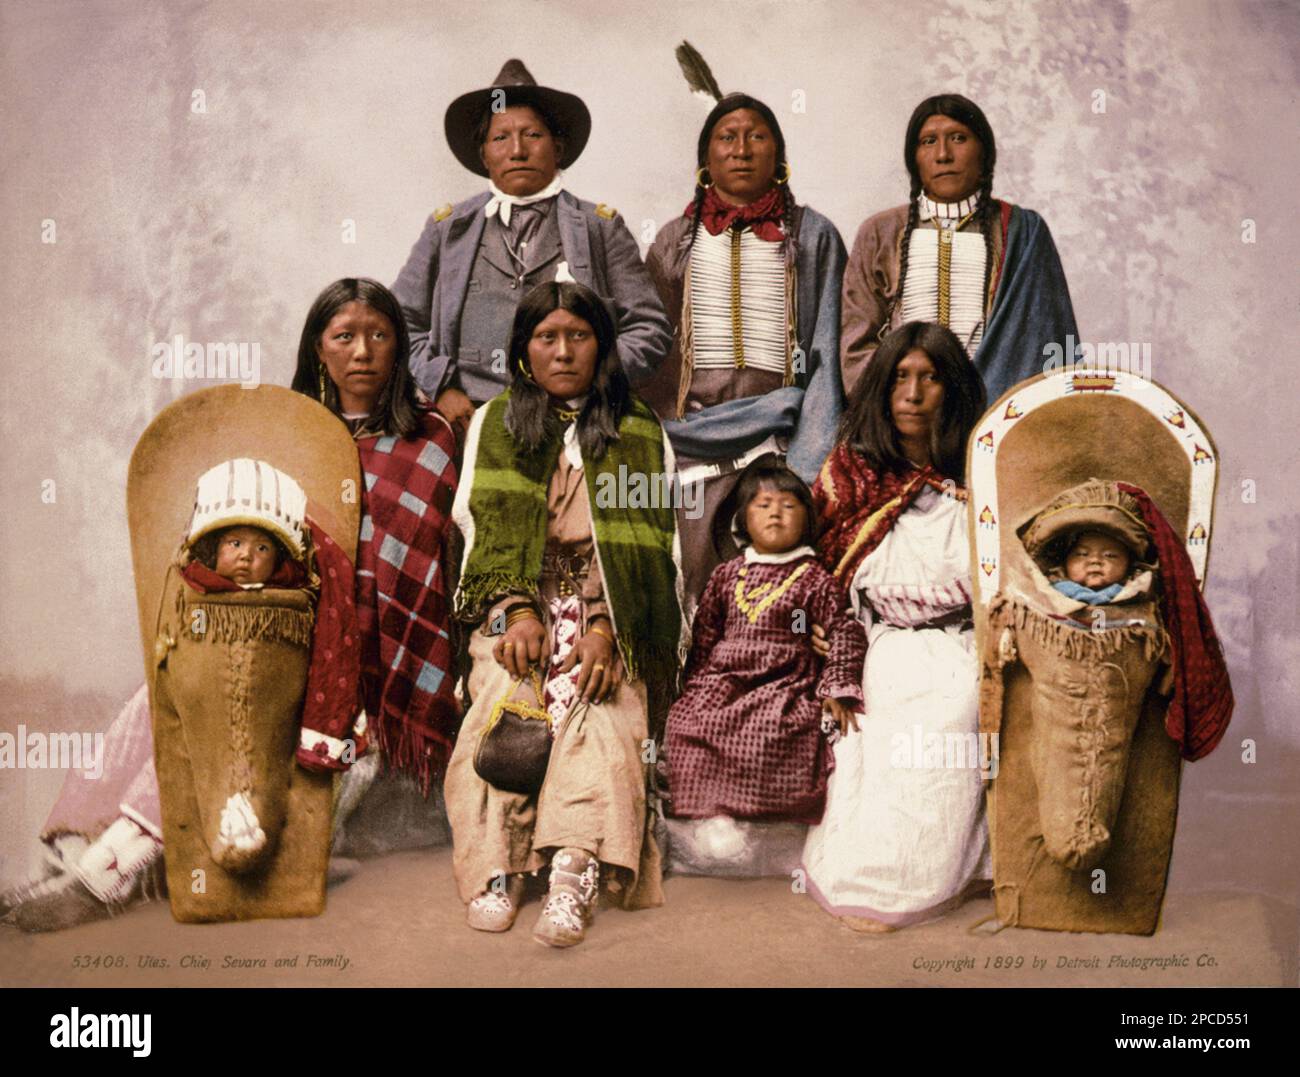 1899 , USA : Indianerfamilie der UTEN , CHIEF SEVARA ( d. h. SEVERO oder SIVERO ) . Photocrom von Detroit Photographic Co, USA - GESCHICHTE - foto storiche - foto storica - Indianer - INDIANI D' AMERICA - PELLEROSSA - Indianer amerikaner - Indianer von Nordamerika - FRAU - FRAUEN - DONNA - DONNE - Indianer von Nordamerika - Frauen - Mütter und Kinder - INDIANA - INDIANO - Portrait - ritratto - pellerossa - MADRE - MAMMA e FIGLIO - FIGLI - Söhne - bambino - Bambini - infantile - Kindheit - Kinder - Zaino - Hut - cappello - Treccia - Treccie - Orechino - Orechini - Ohrentropfen - Tasche - Stockfoto